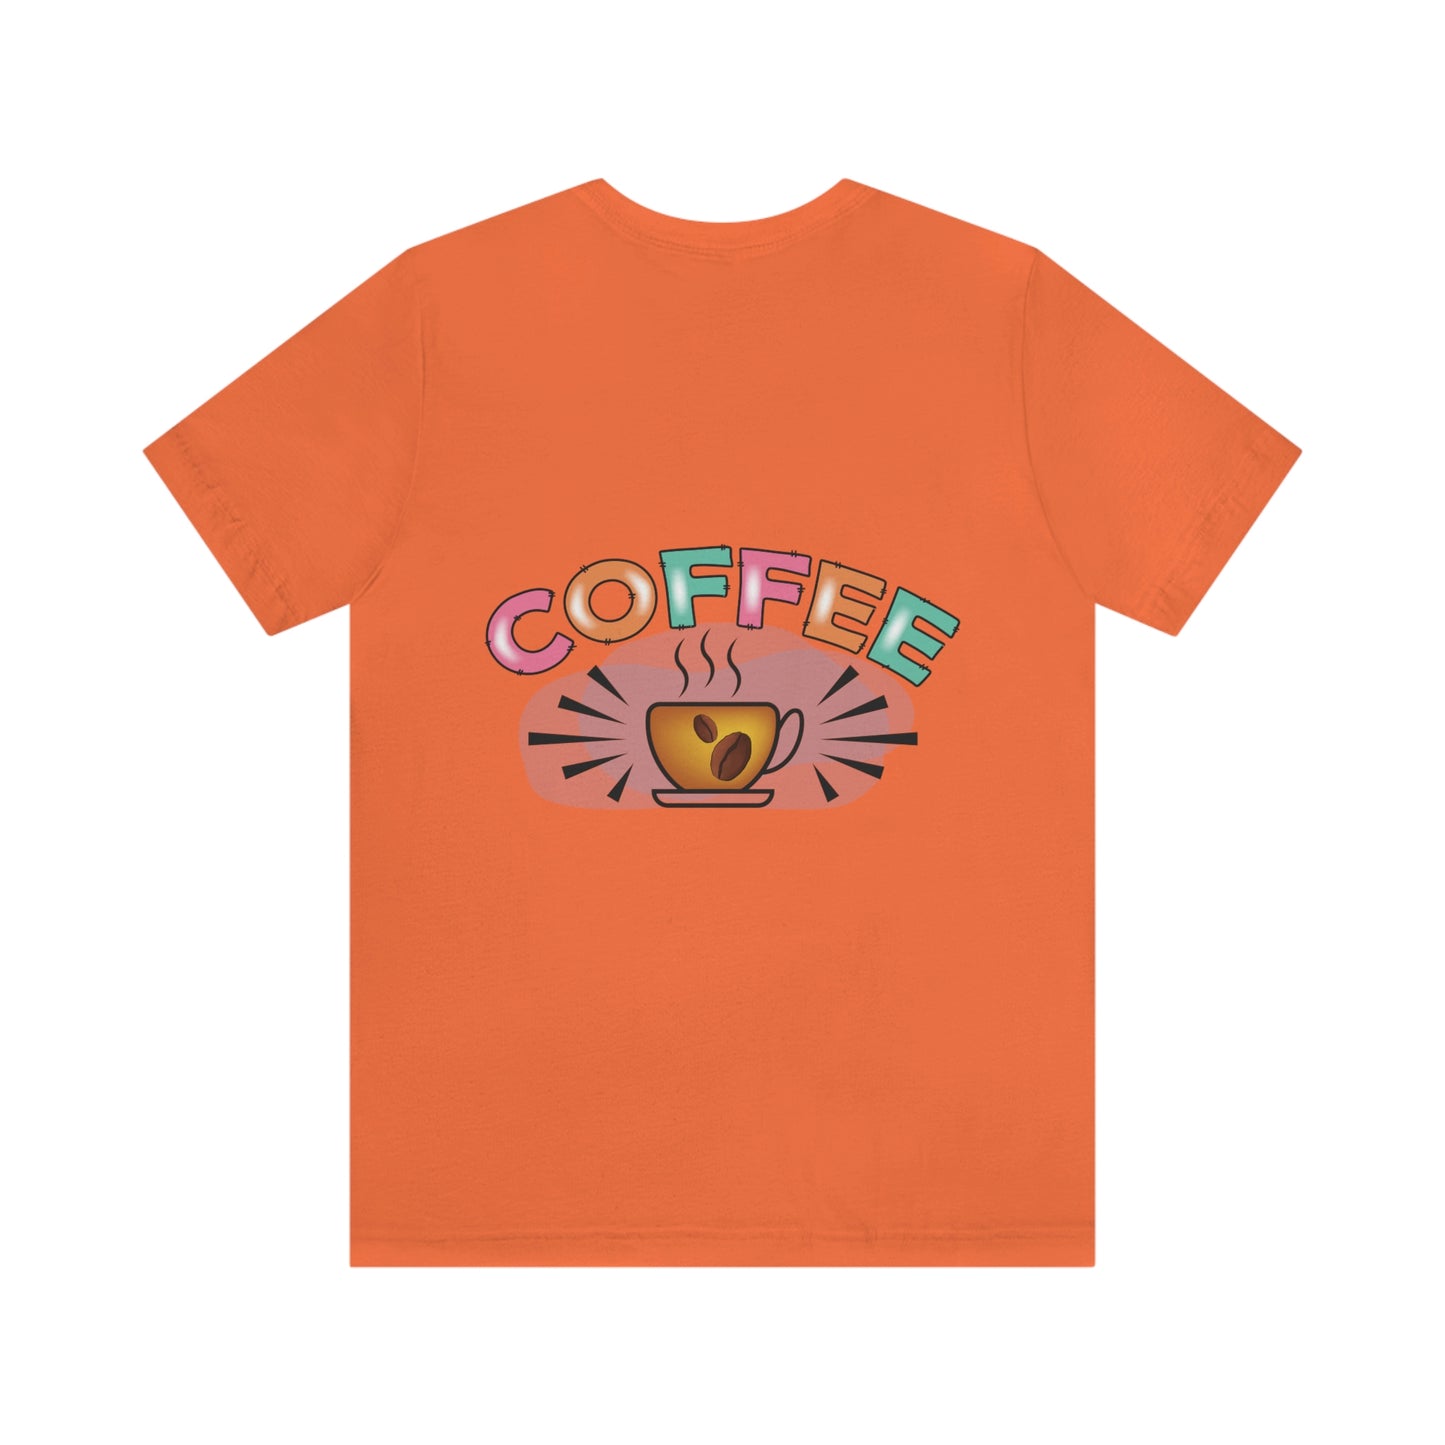 Coffee Style, Coffee Time, Coffee Lovers, Short Sleeve Tee